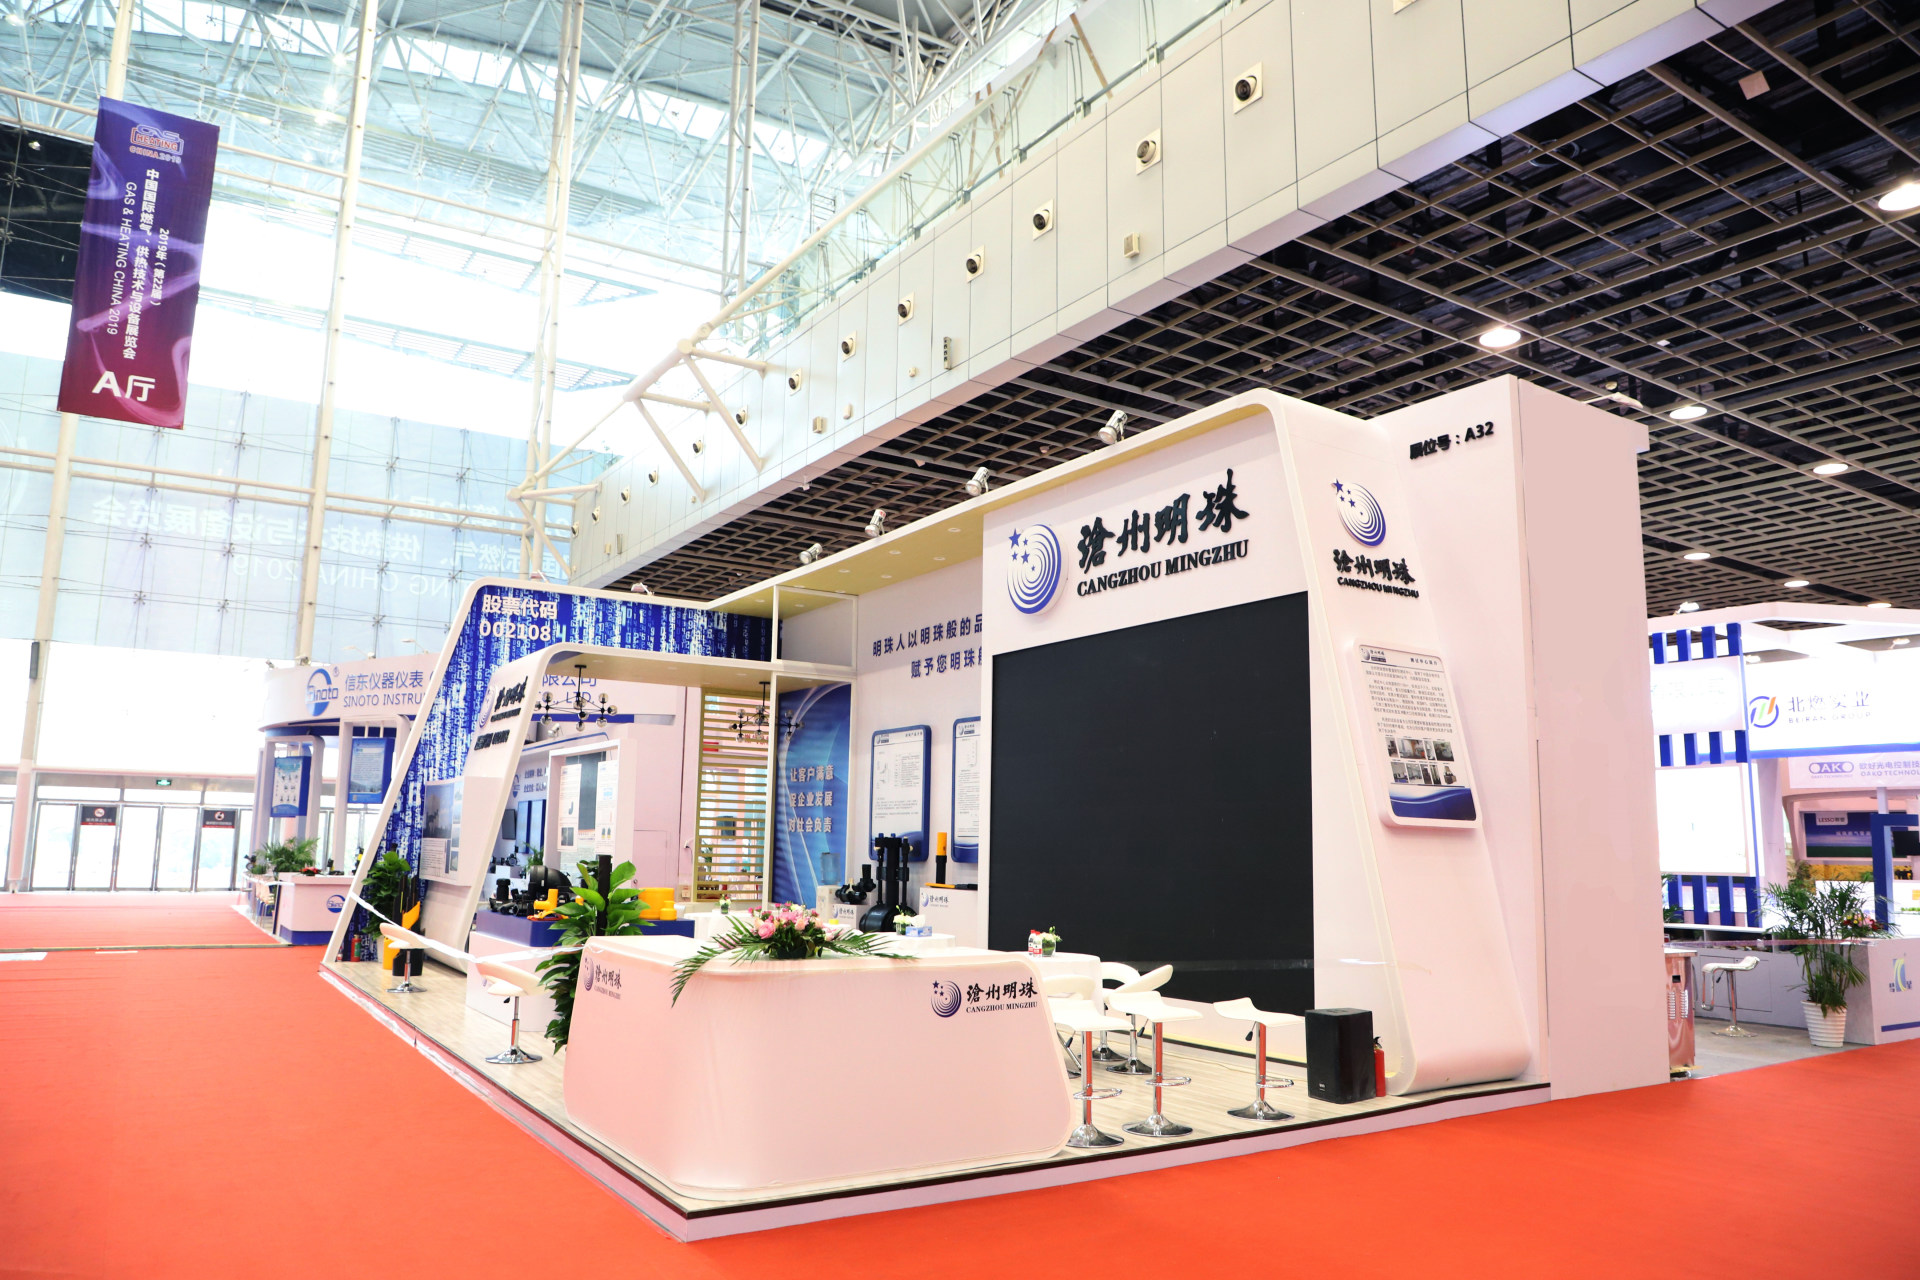 沧州明珠公司精彩亮相第22届中国国际燃气、供热技术与设备展览会